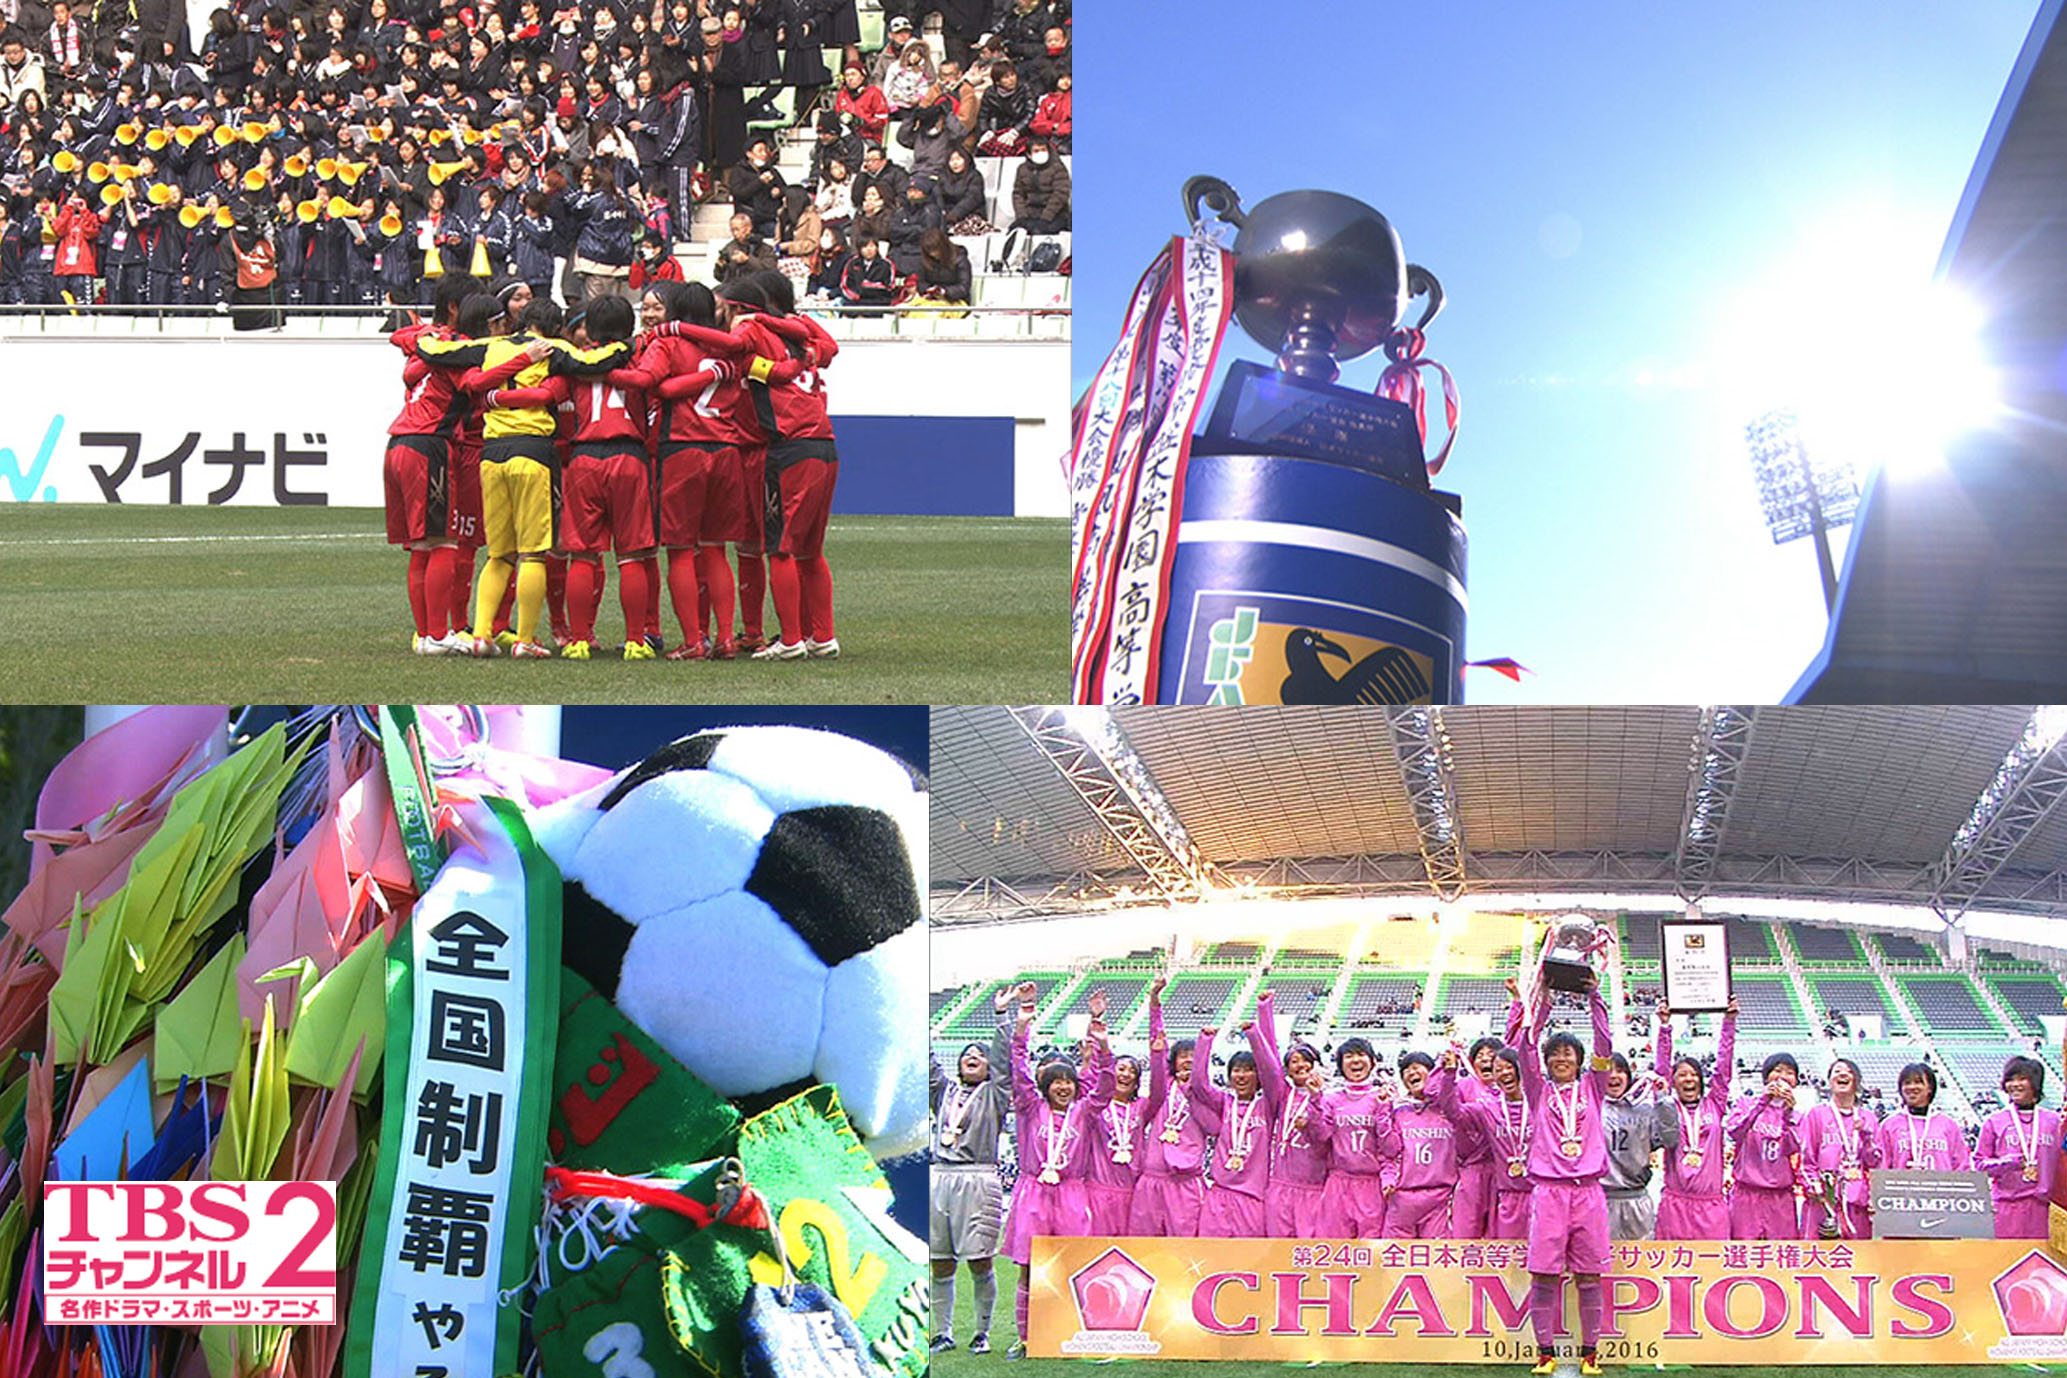 12 30 金 開幕 第25回全日本高校女子サッカー 選手権大会 未来のなでしこジャパン たちの美しくも熱き戦いをcs放送 Tbsチャンネル2で 1回戦から生中継を含め連日オンエア 株式会社tbsテレビのプレスリリース